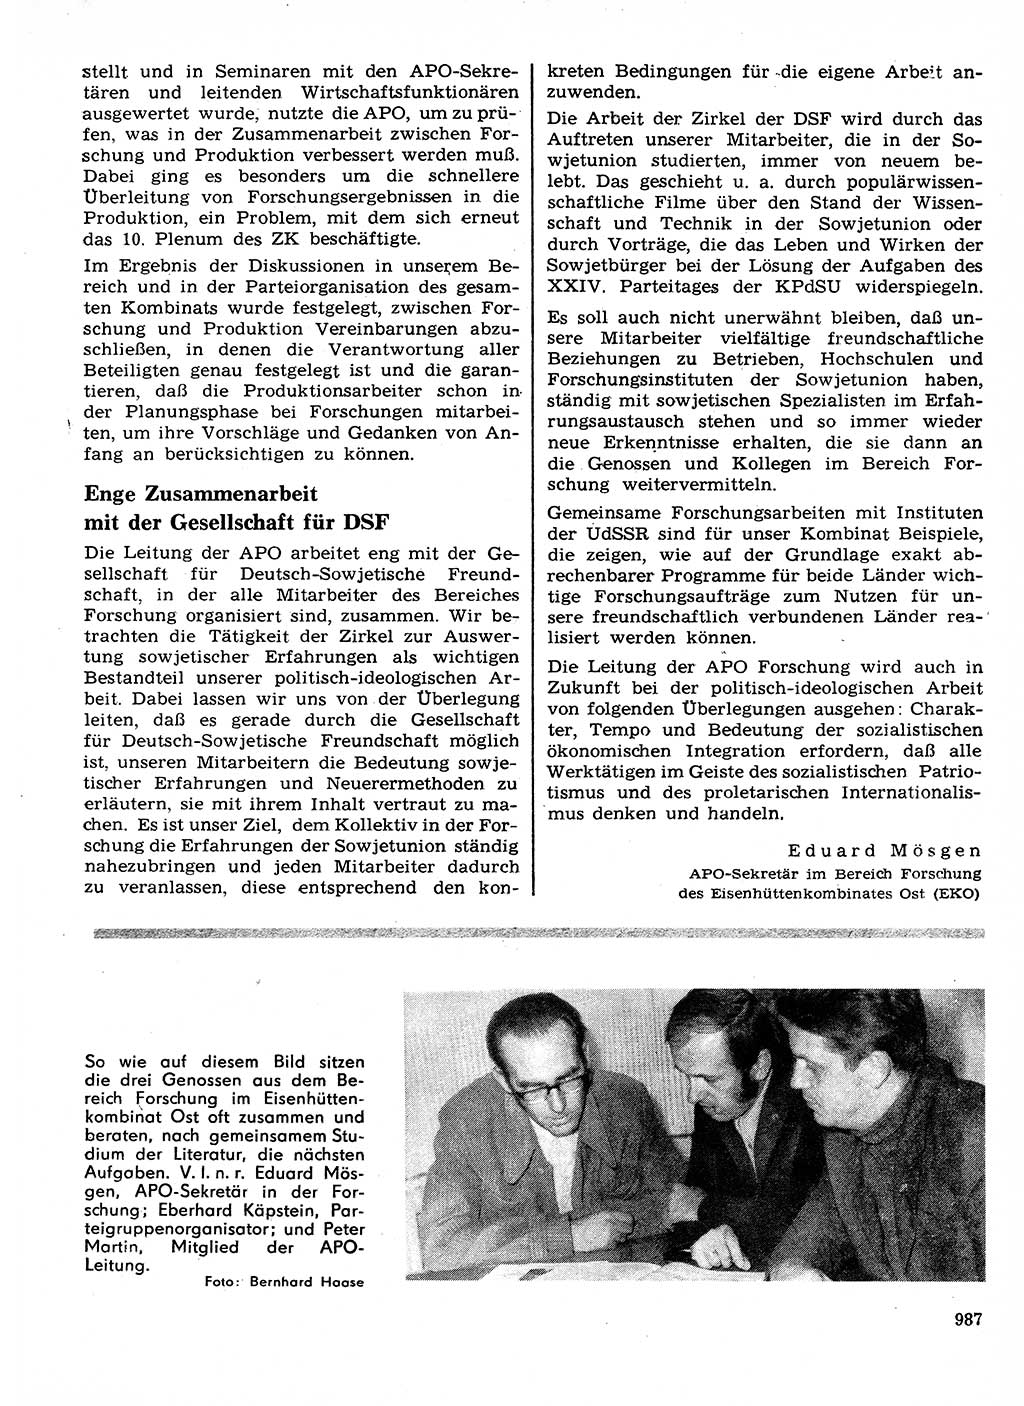 Neuer Weg (NW), Organ des Zentralkomitees (ZK) der SED (Sozialistische Einheitspartei Deutschlands) für Fragen des Parteilebens, 28. Jahrgang [Deutsche Demokratische Republik (DDR)] 1973, Seite 987 (NW ZK SED DDR 1973, S. 987)